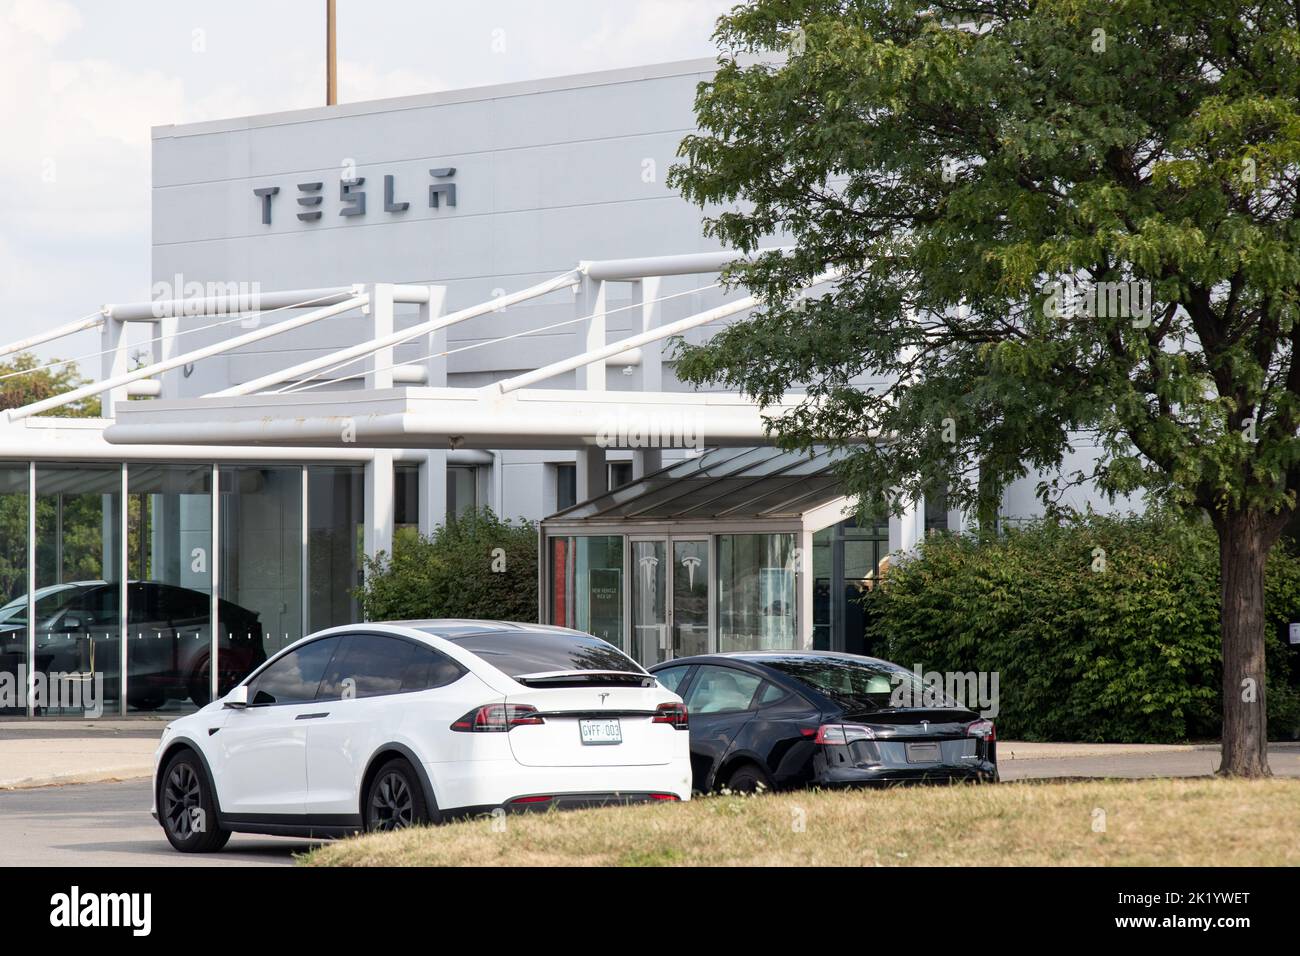 L'avant d'un concessionnaire Tesla est vu pendant la journée avec un modèle X blanc et un modèle 3 noir à l'avant, tandis qu'un véhicule de démonstration peut être vu dans le bâtiment. Banque D'Images